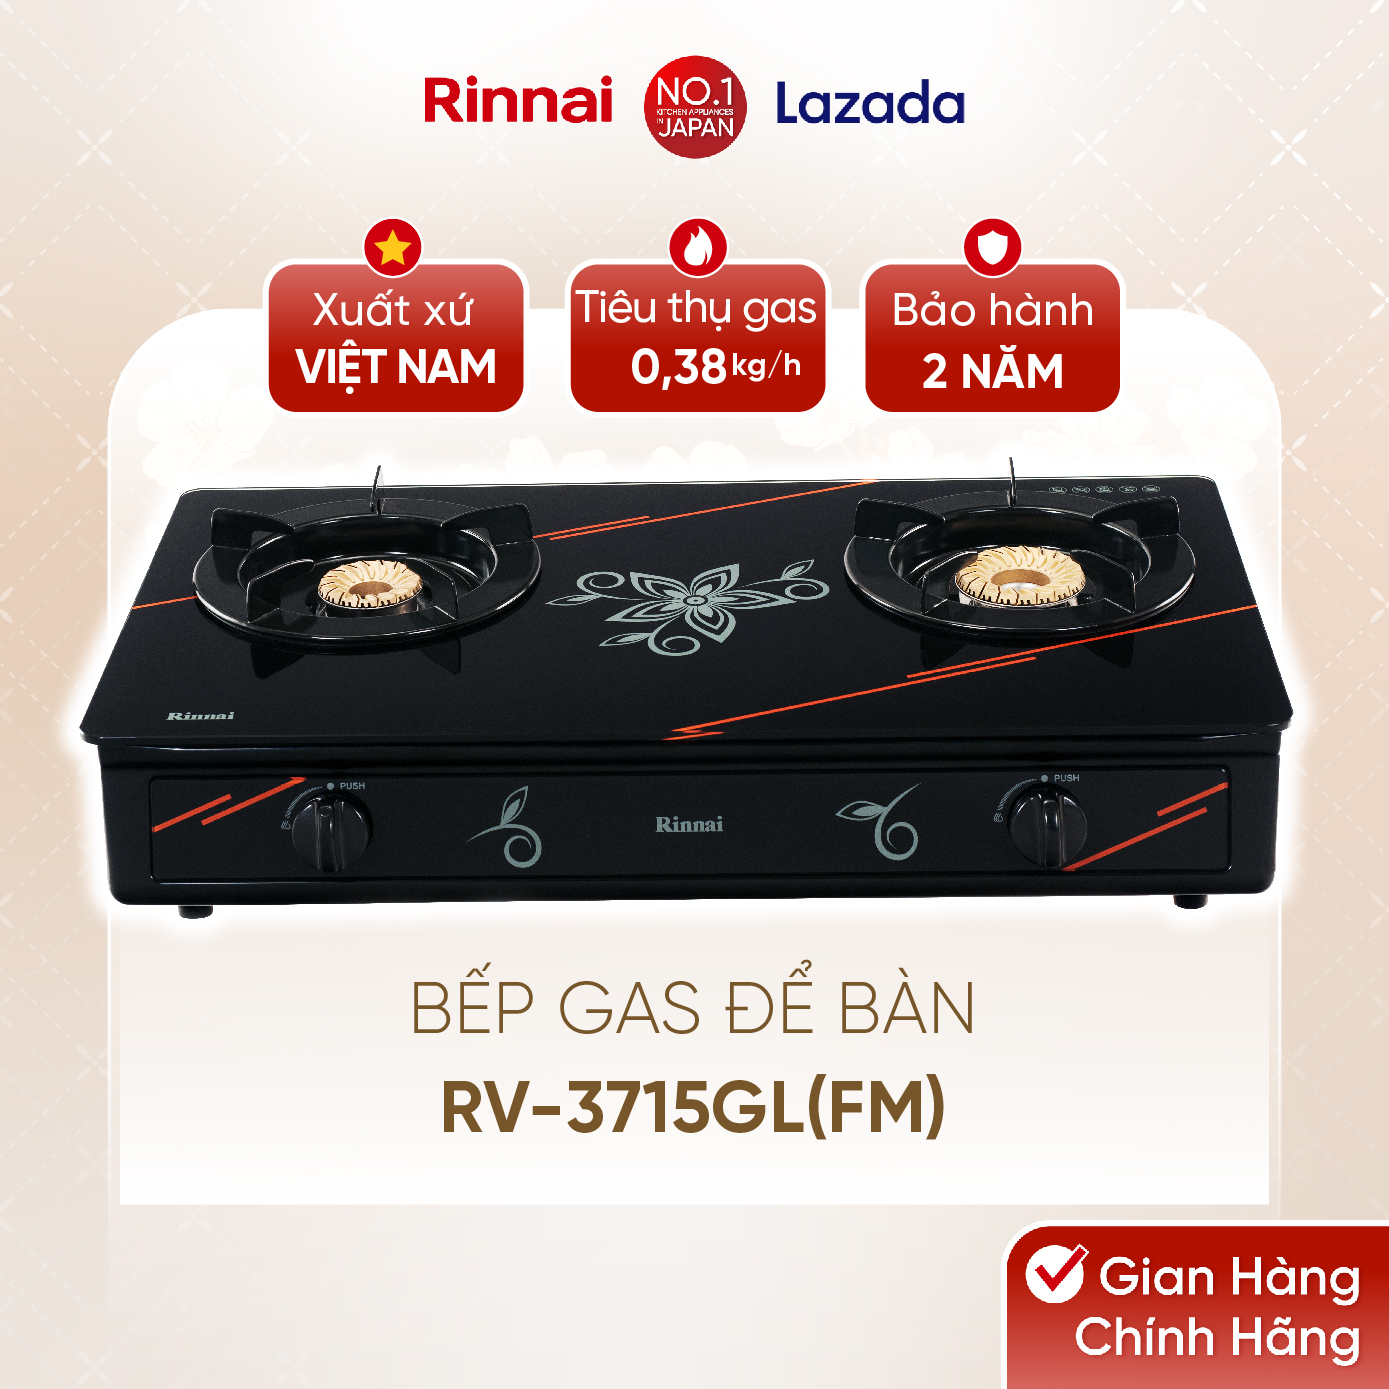 Bếp gas dương Rinnai RV-3715GL(FM) mặt bếp kính và kiềng bếp men - Hàng chính hãng.